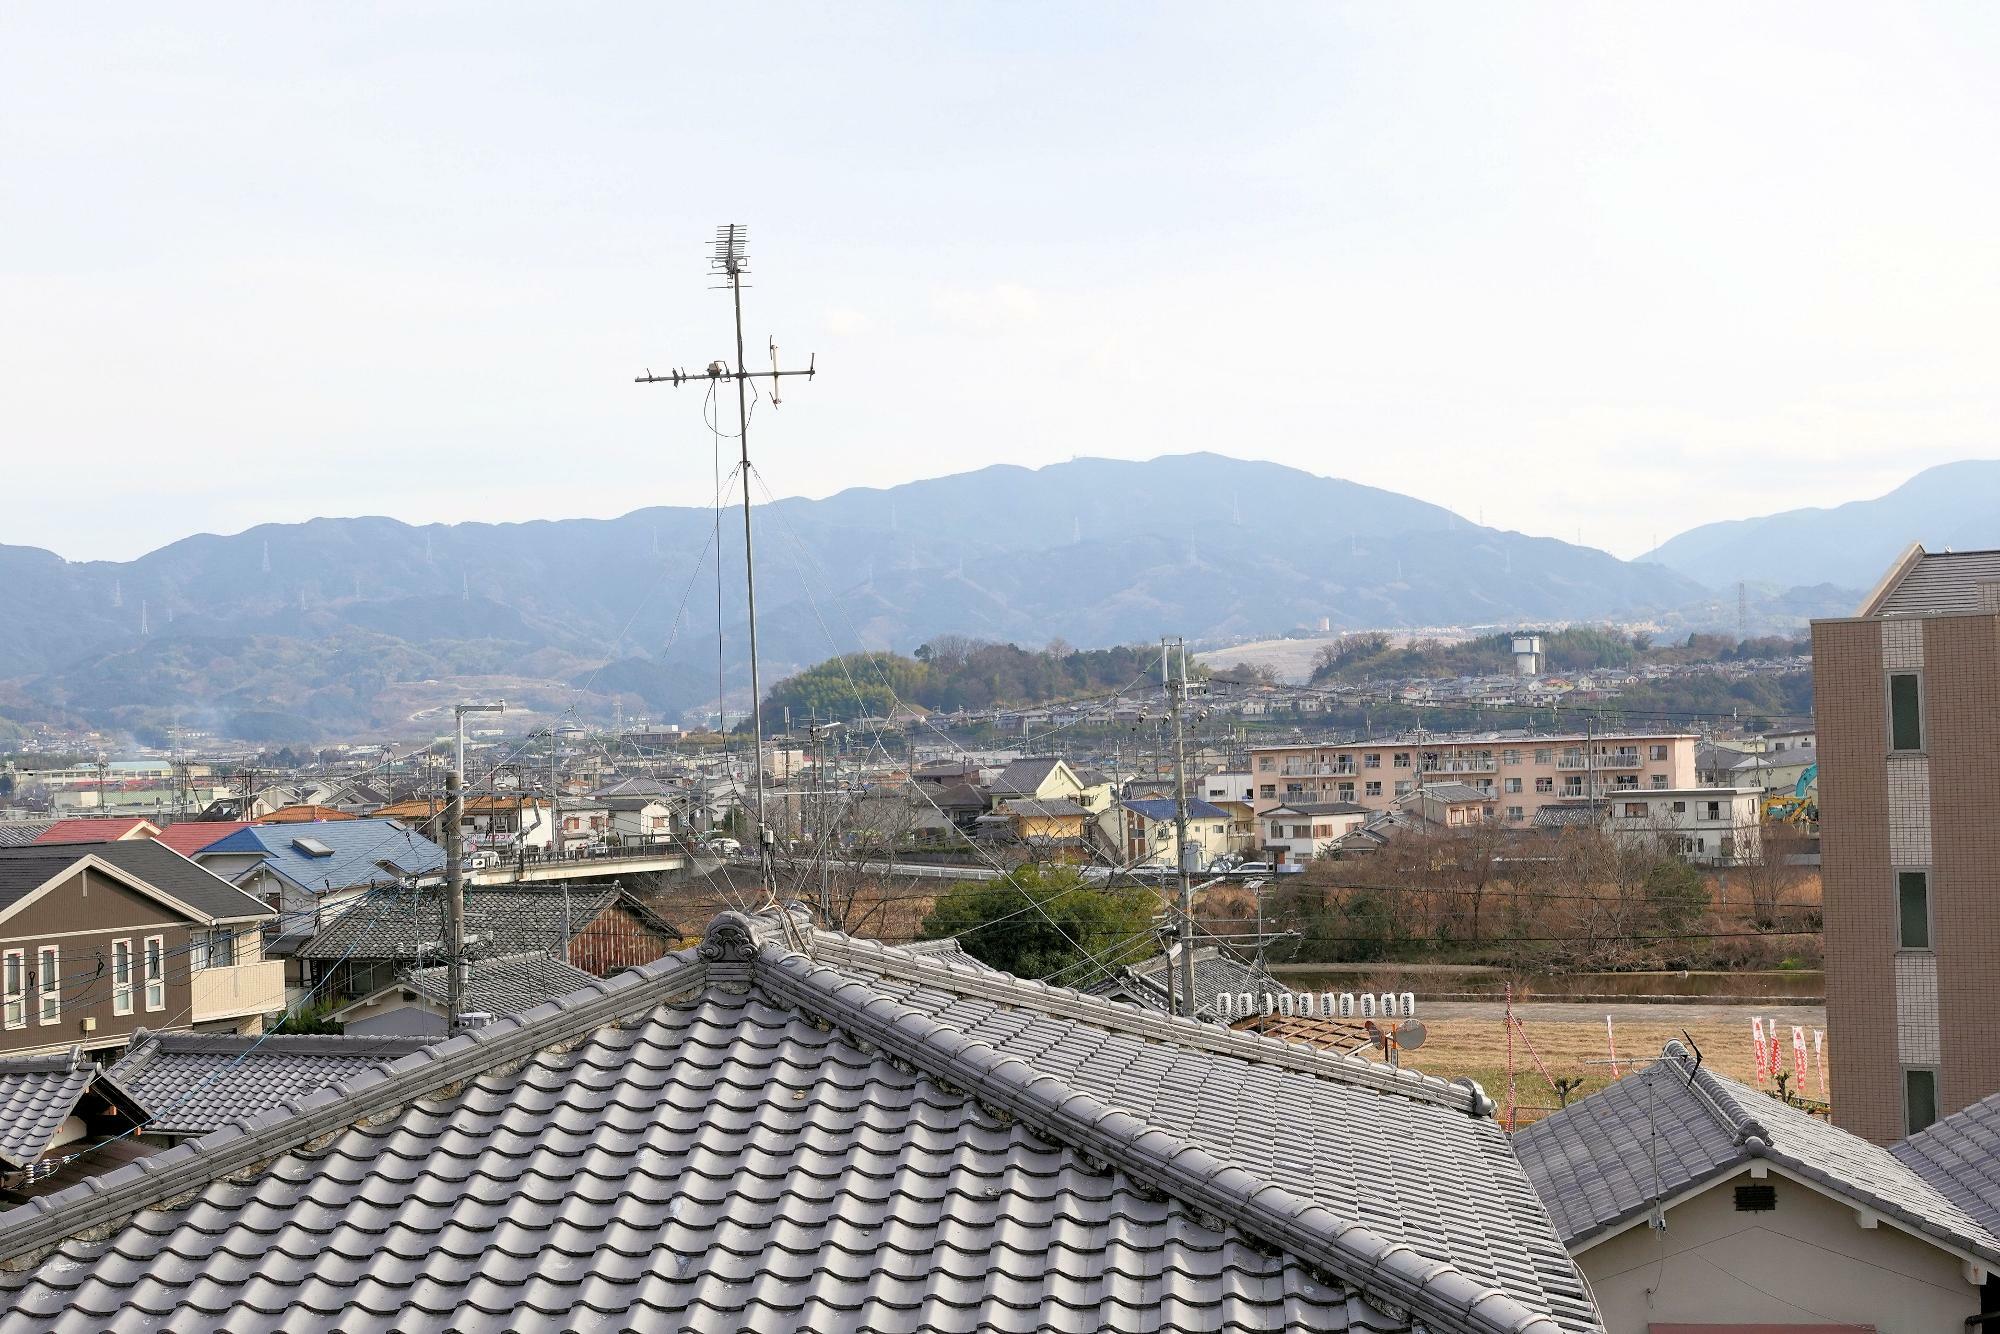 寺内町から石川方面を見ると高台になっているのがわかる